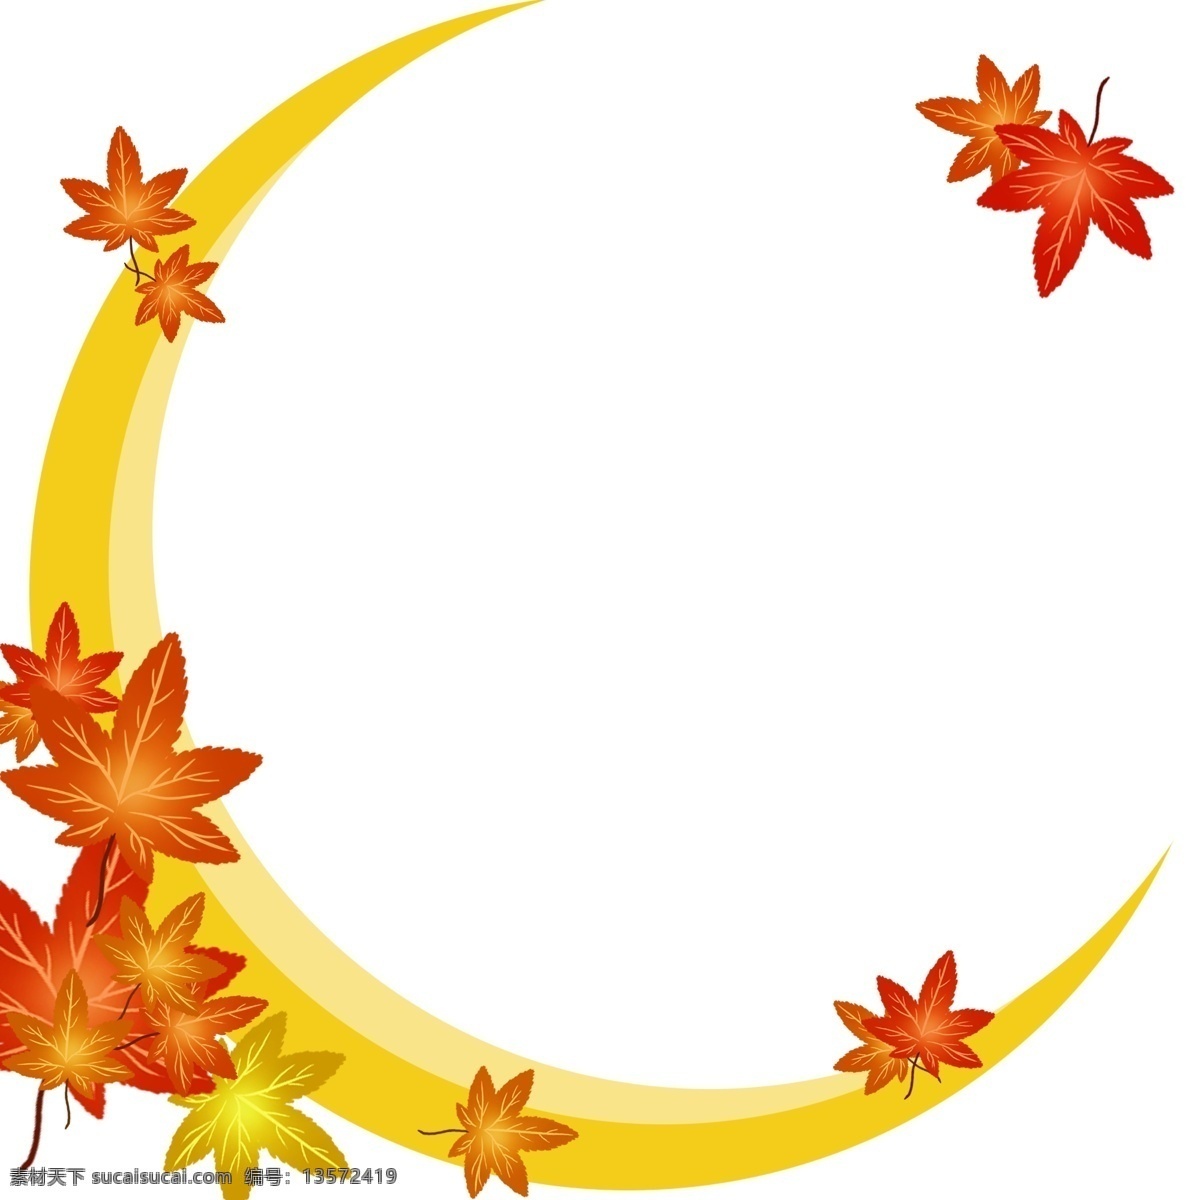 秋季 树叶 月亮 边框 插画 黄色 植物树叶边框 秋季树叶边框 树叶边框装饰 树叶边框插画 黄色的月亮